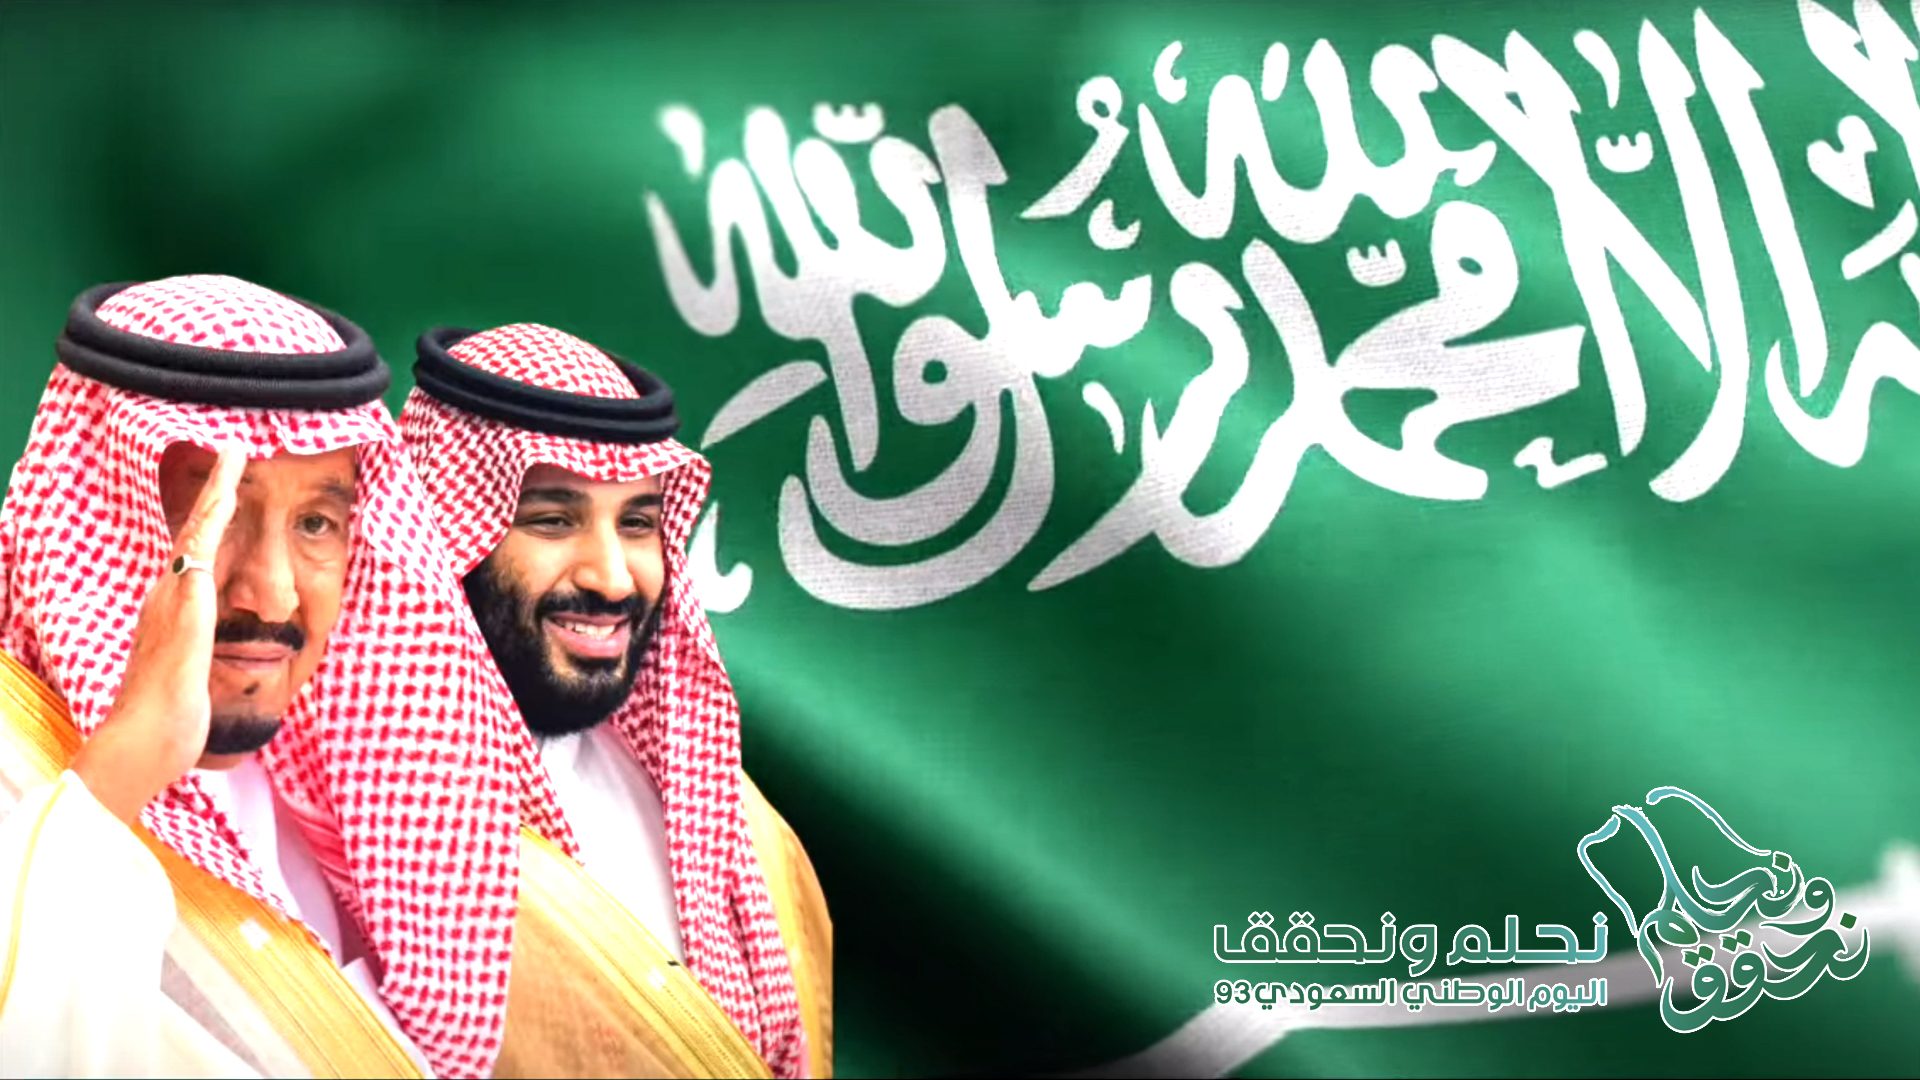 اليوم الوطني السعودي 93 نحلم ونحقق